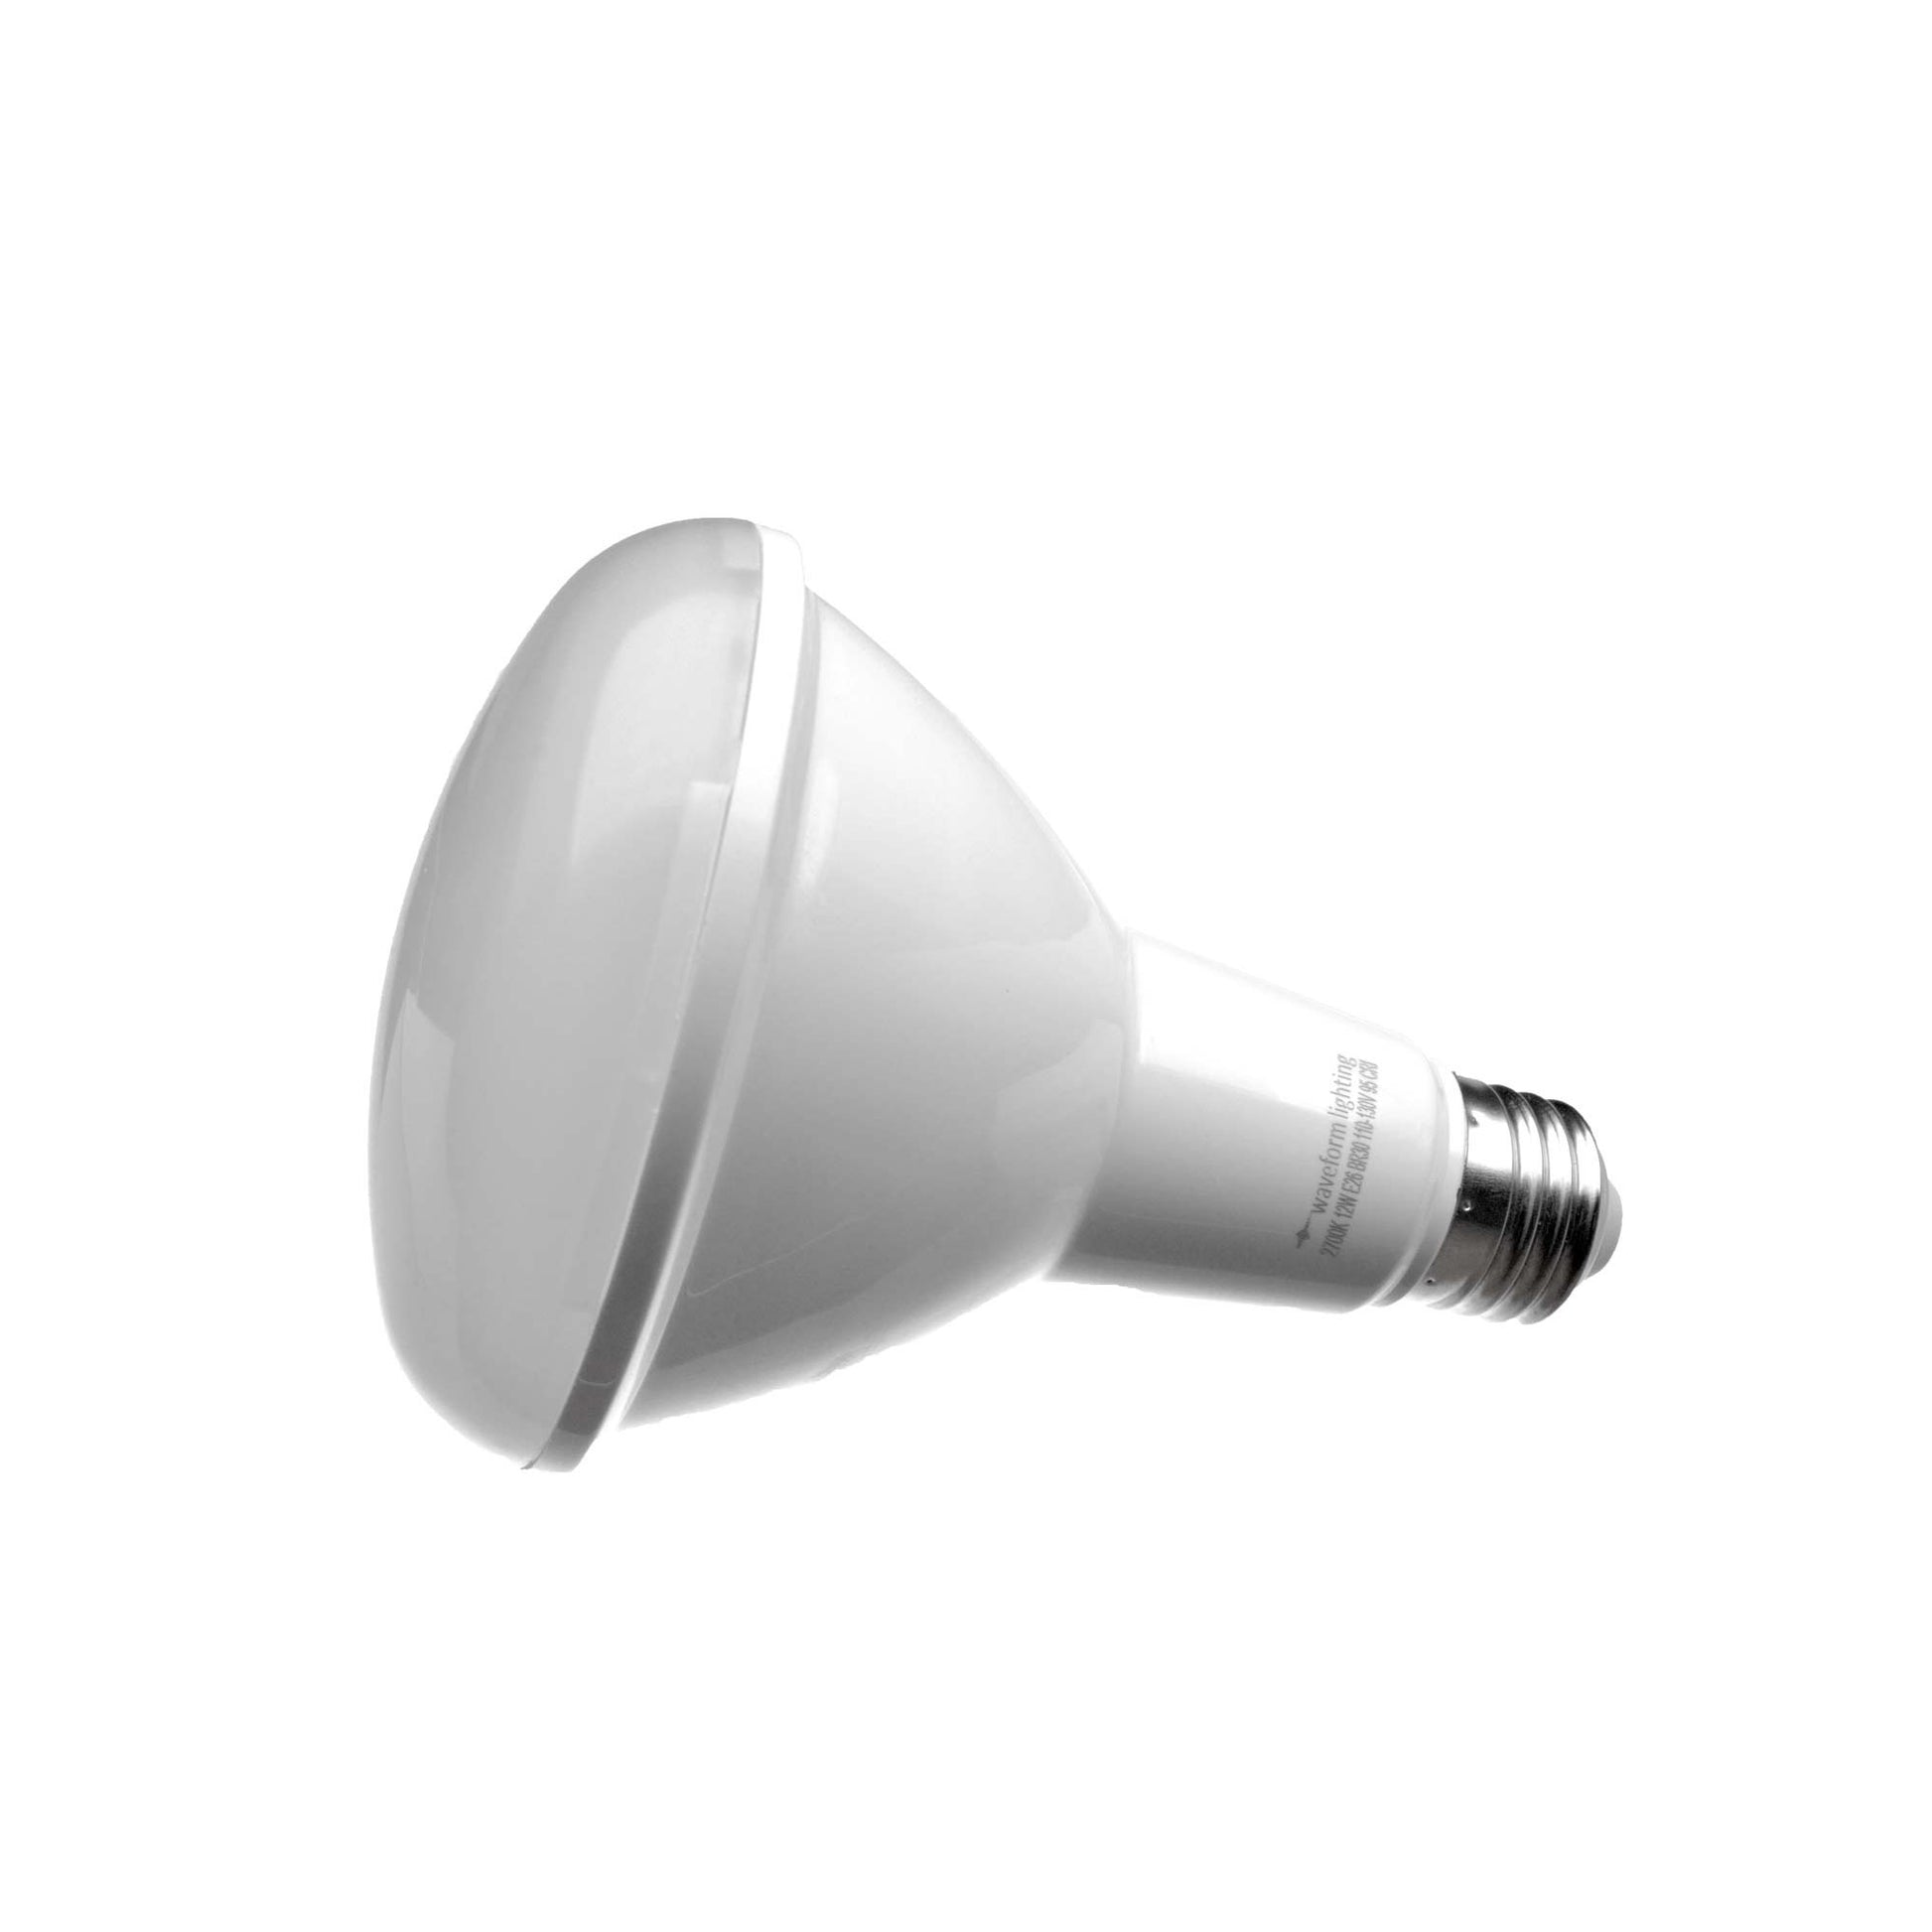 Ultra High 95 E26 BR30 Bulb for Home & Residential Waveform Lighting